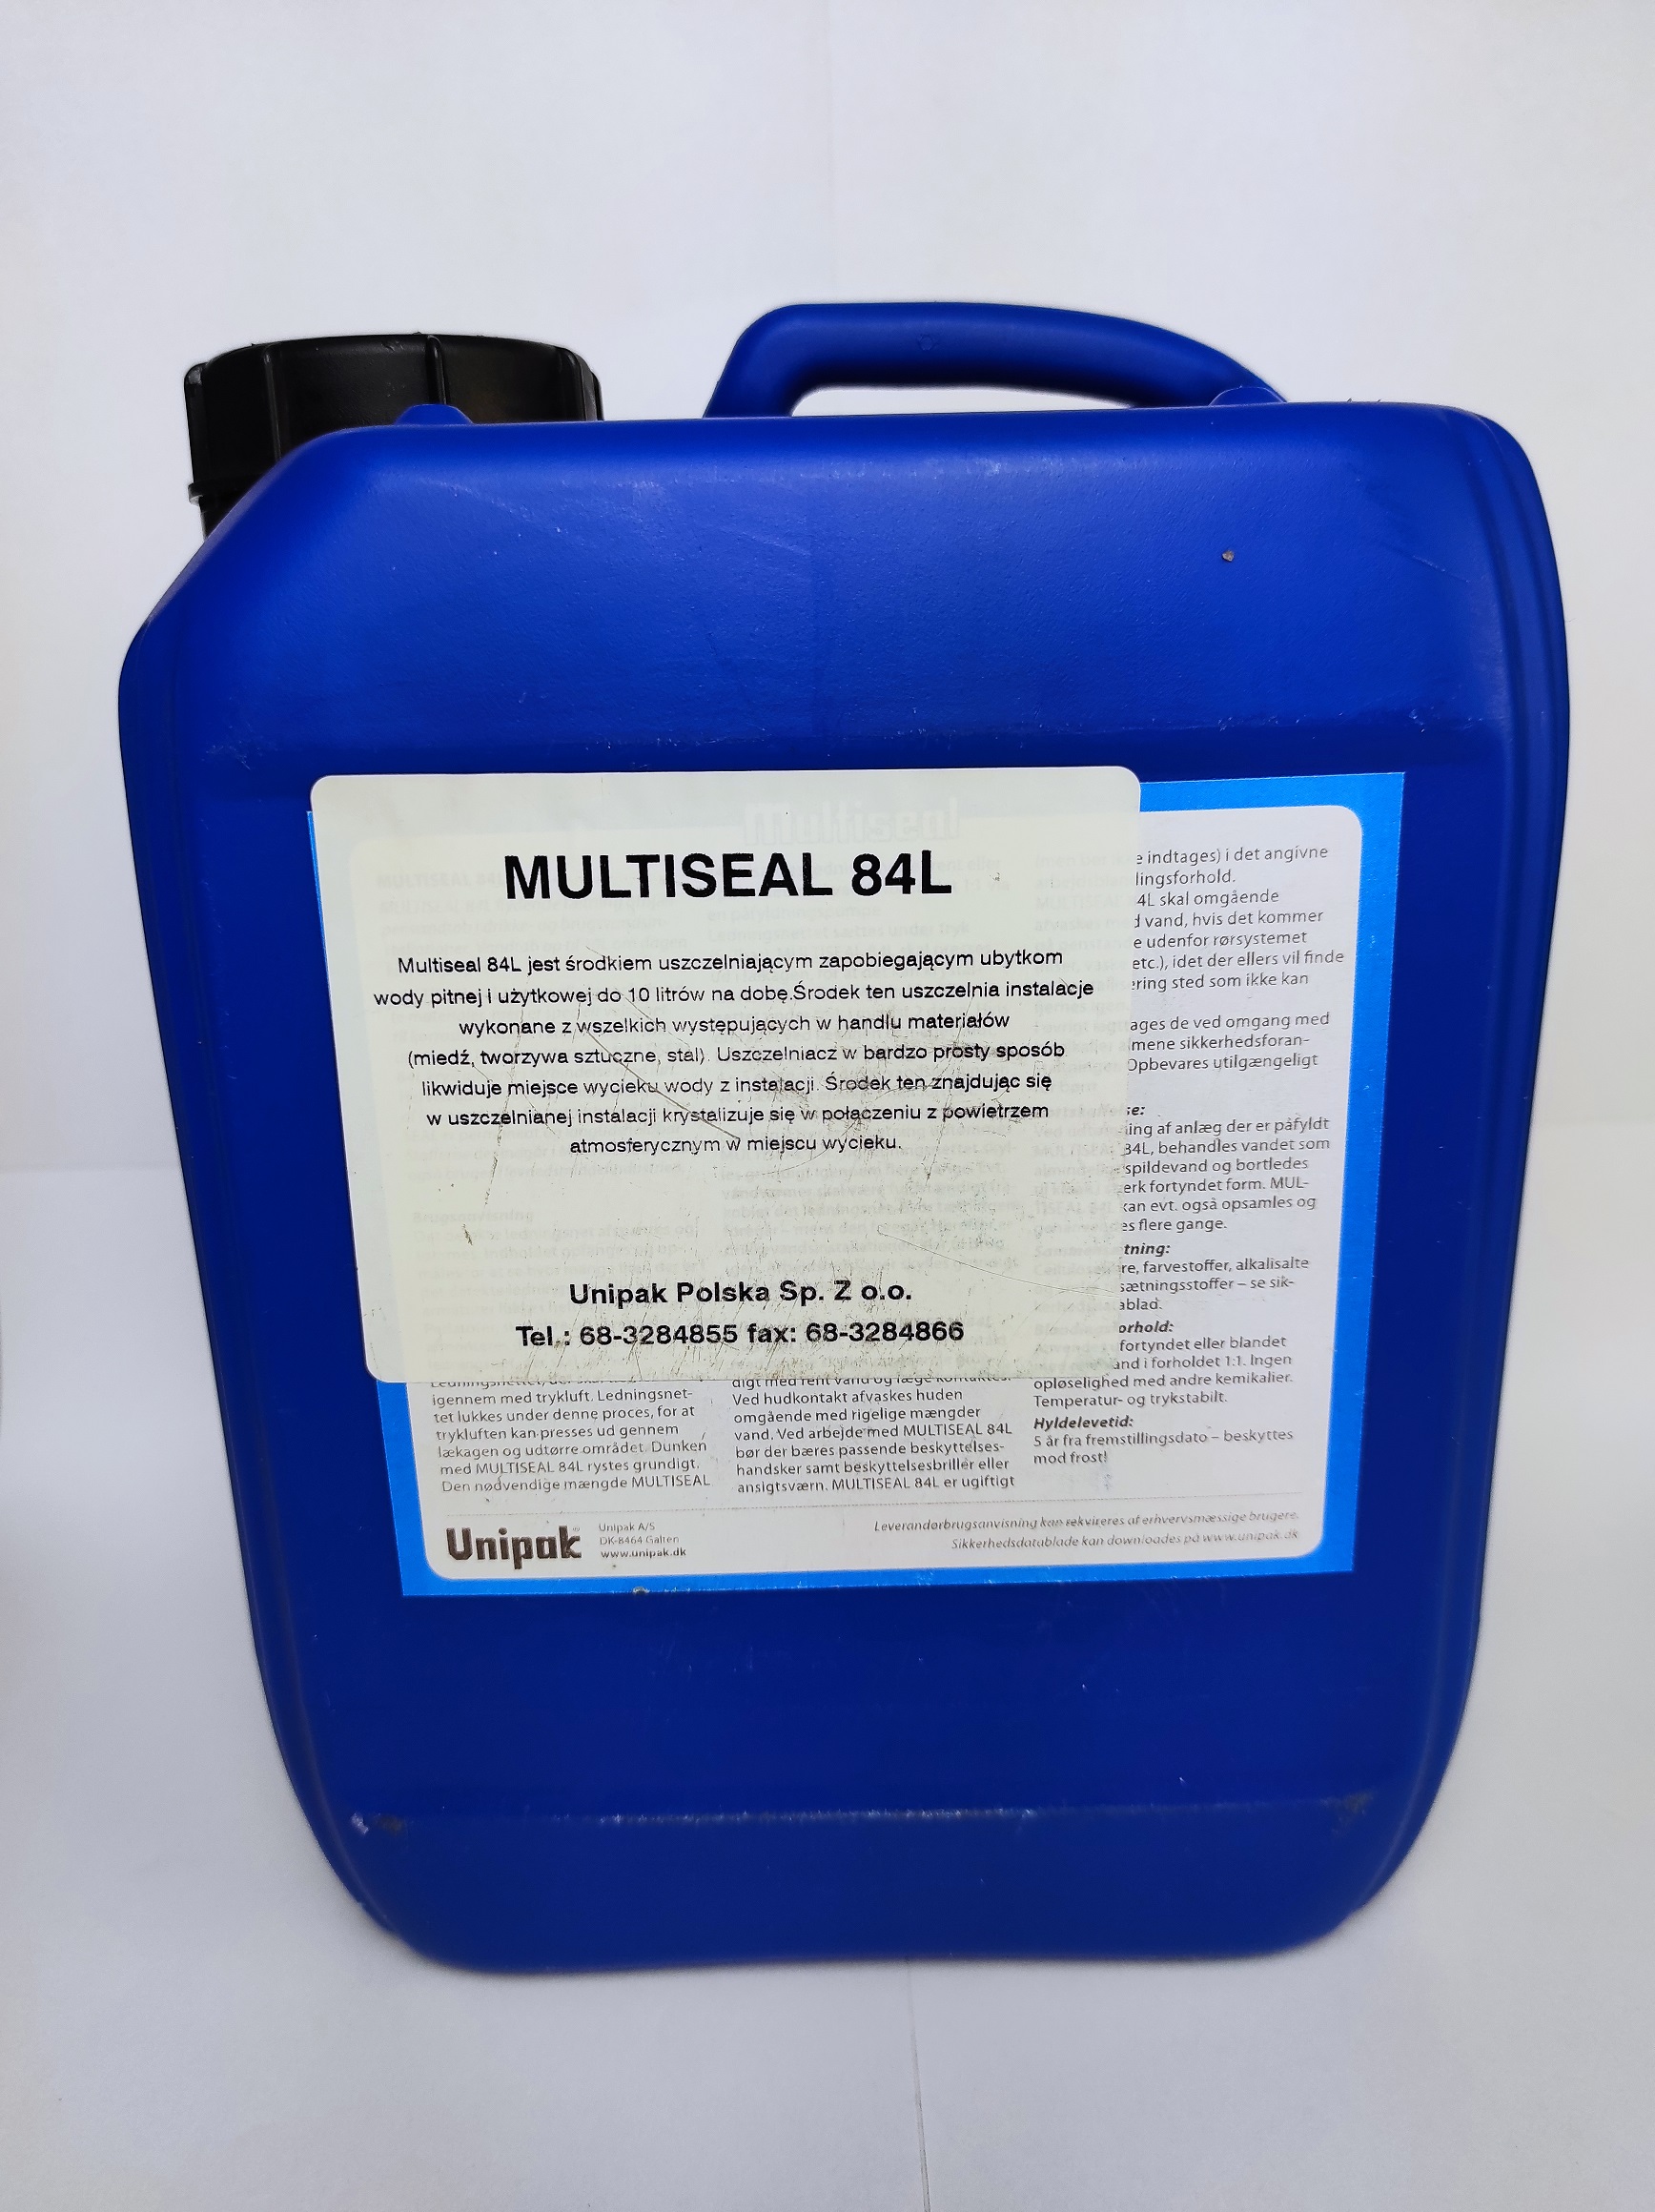 Multiseal 84L (nowa nazwa WATER S) - wyciek wody nie większy niż 5 litrów na dobę